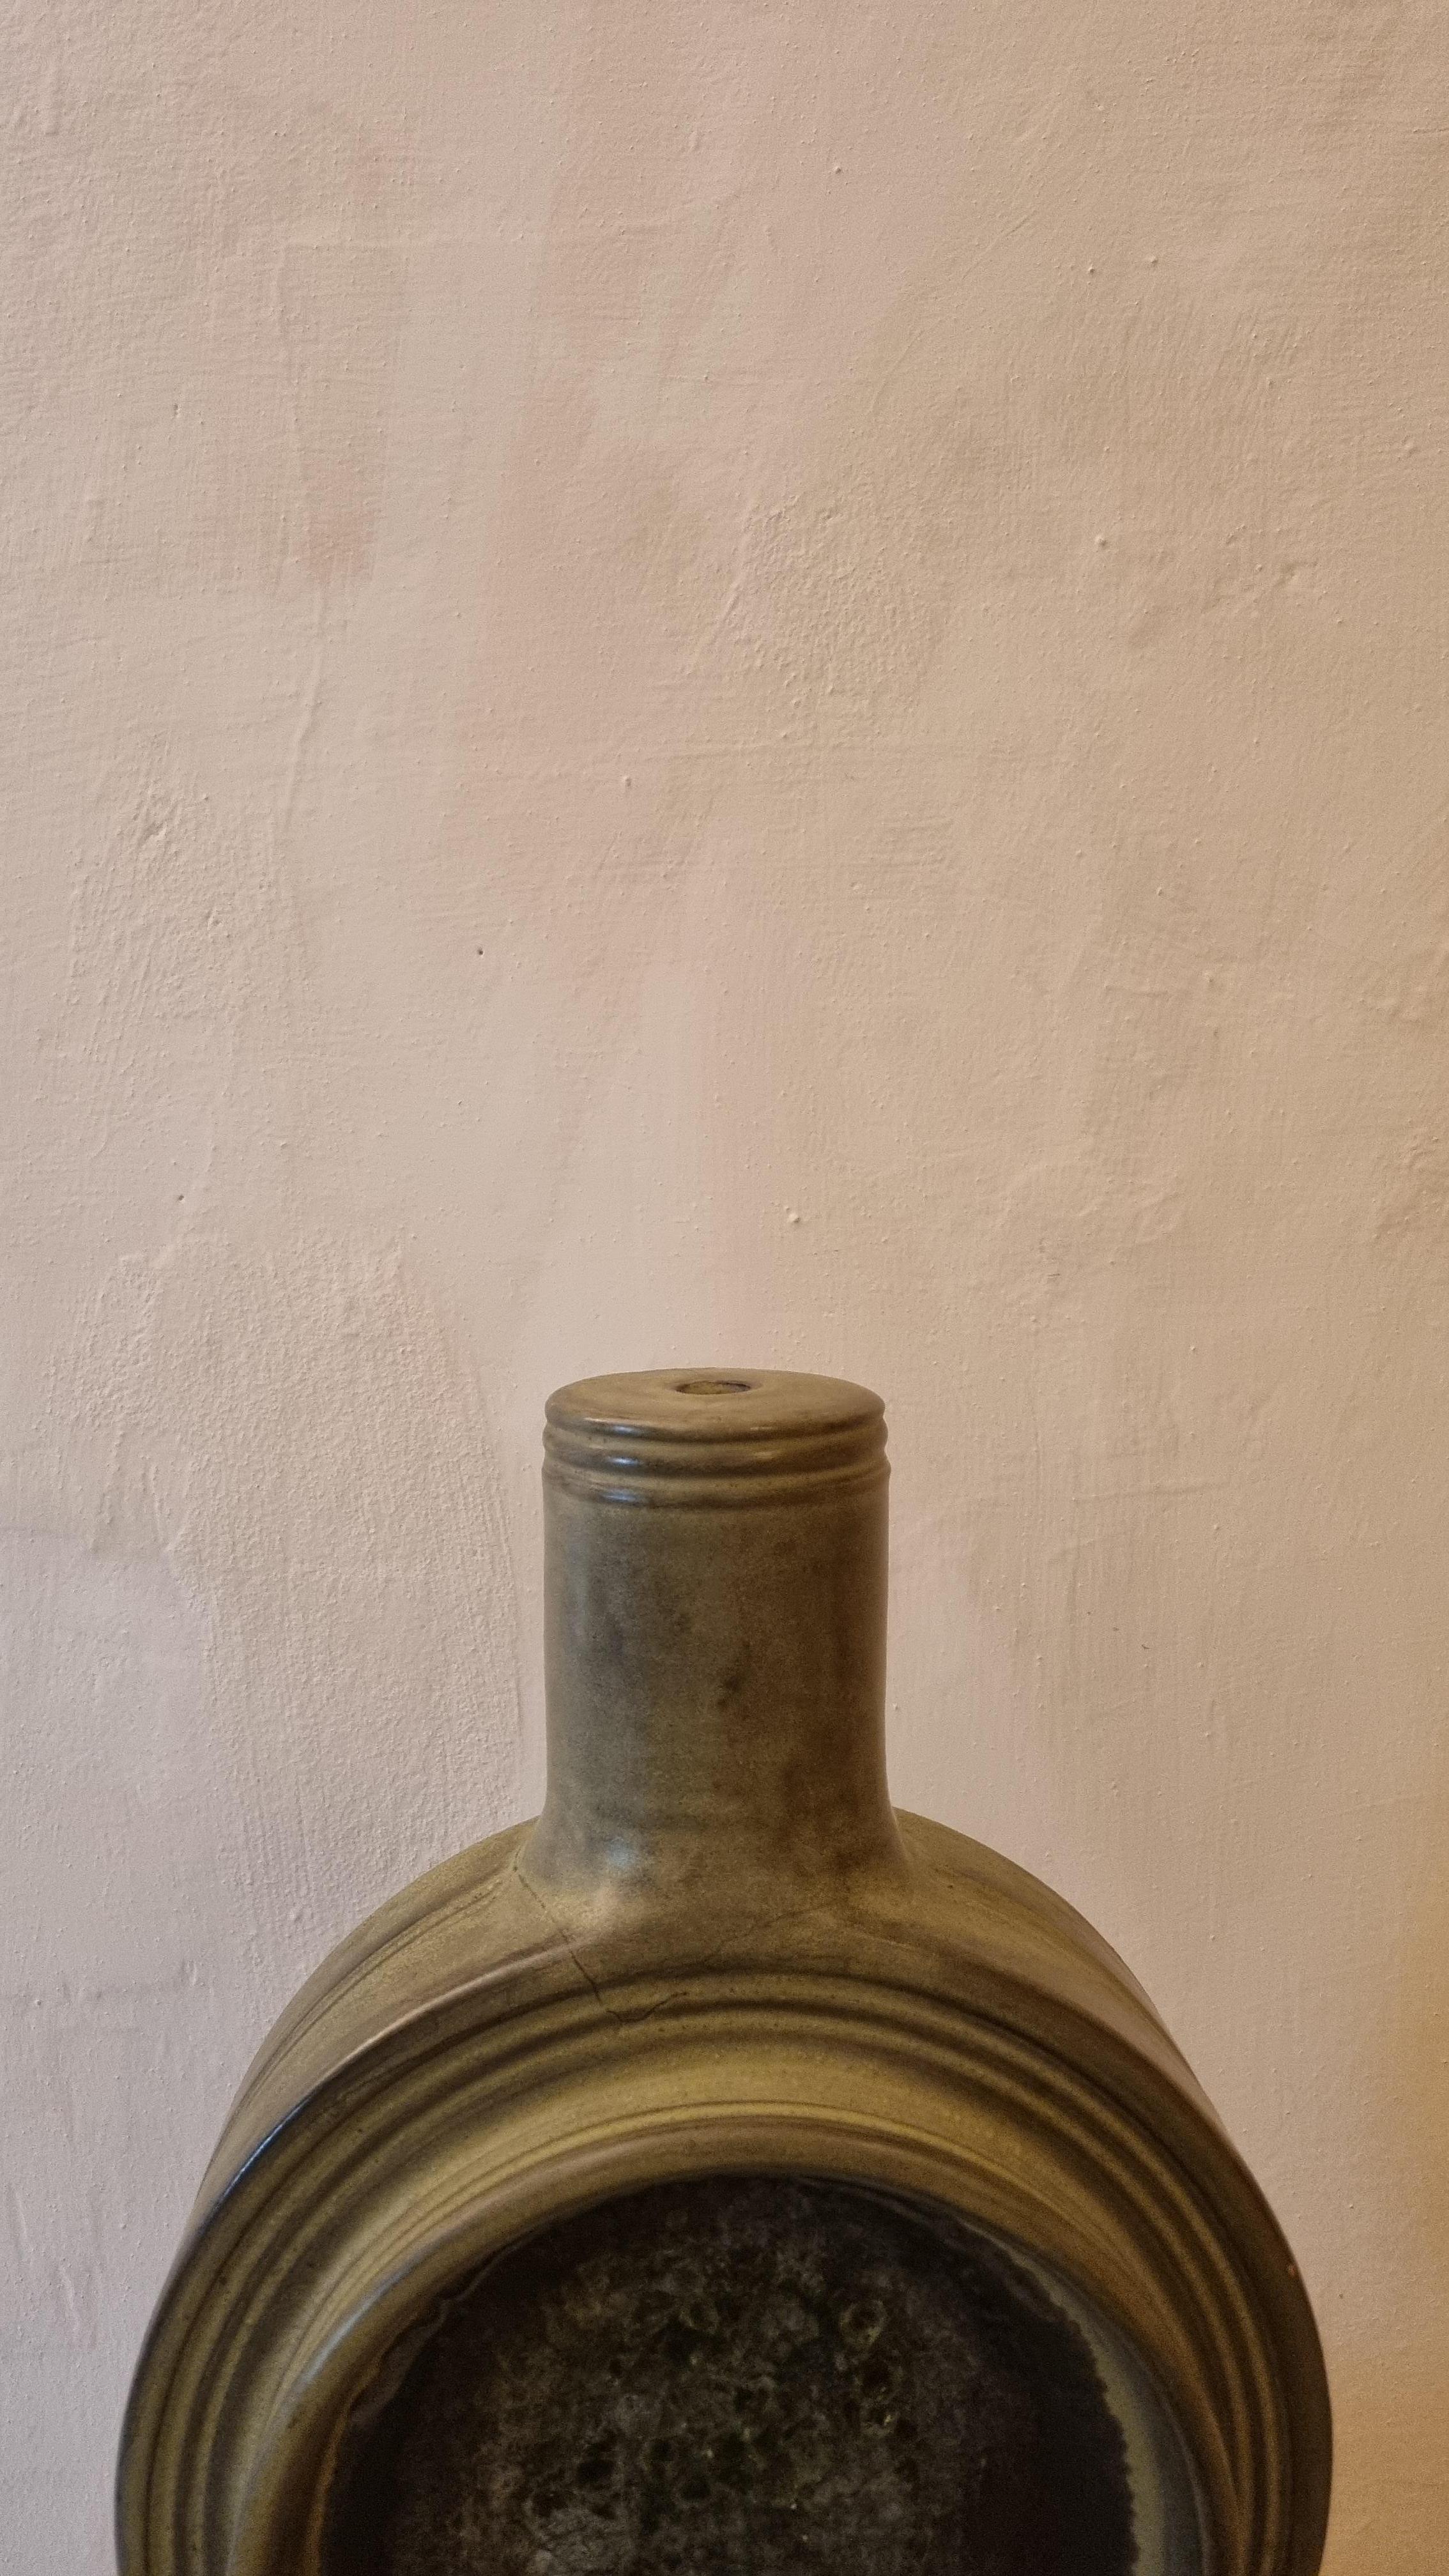 Fritte Porte-lampe en céramique d'Aldo Londi pour Ceramiche Bitossi Montelupo, 1964 .
Céramique émaillée, décor pictural vert.
Ce modèle rare de la série Fritte a été produit en série limitée à seulement 35 exemplaires, 
un modèle similaire a été